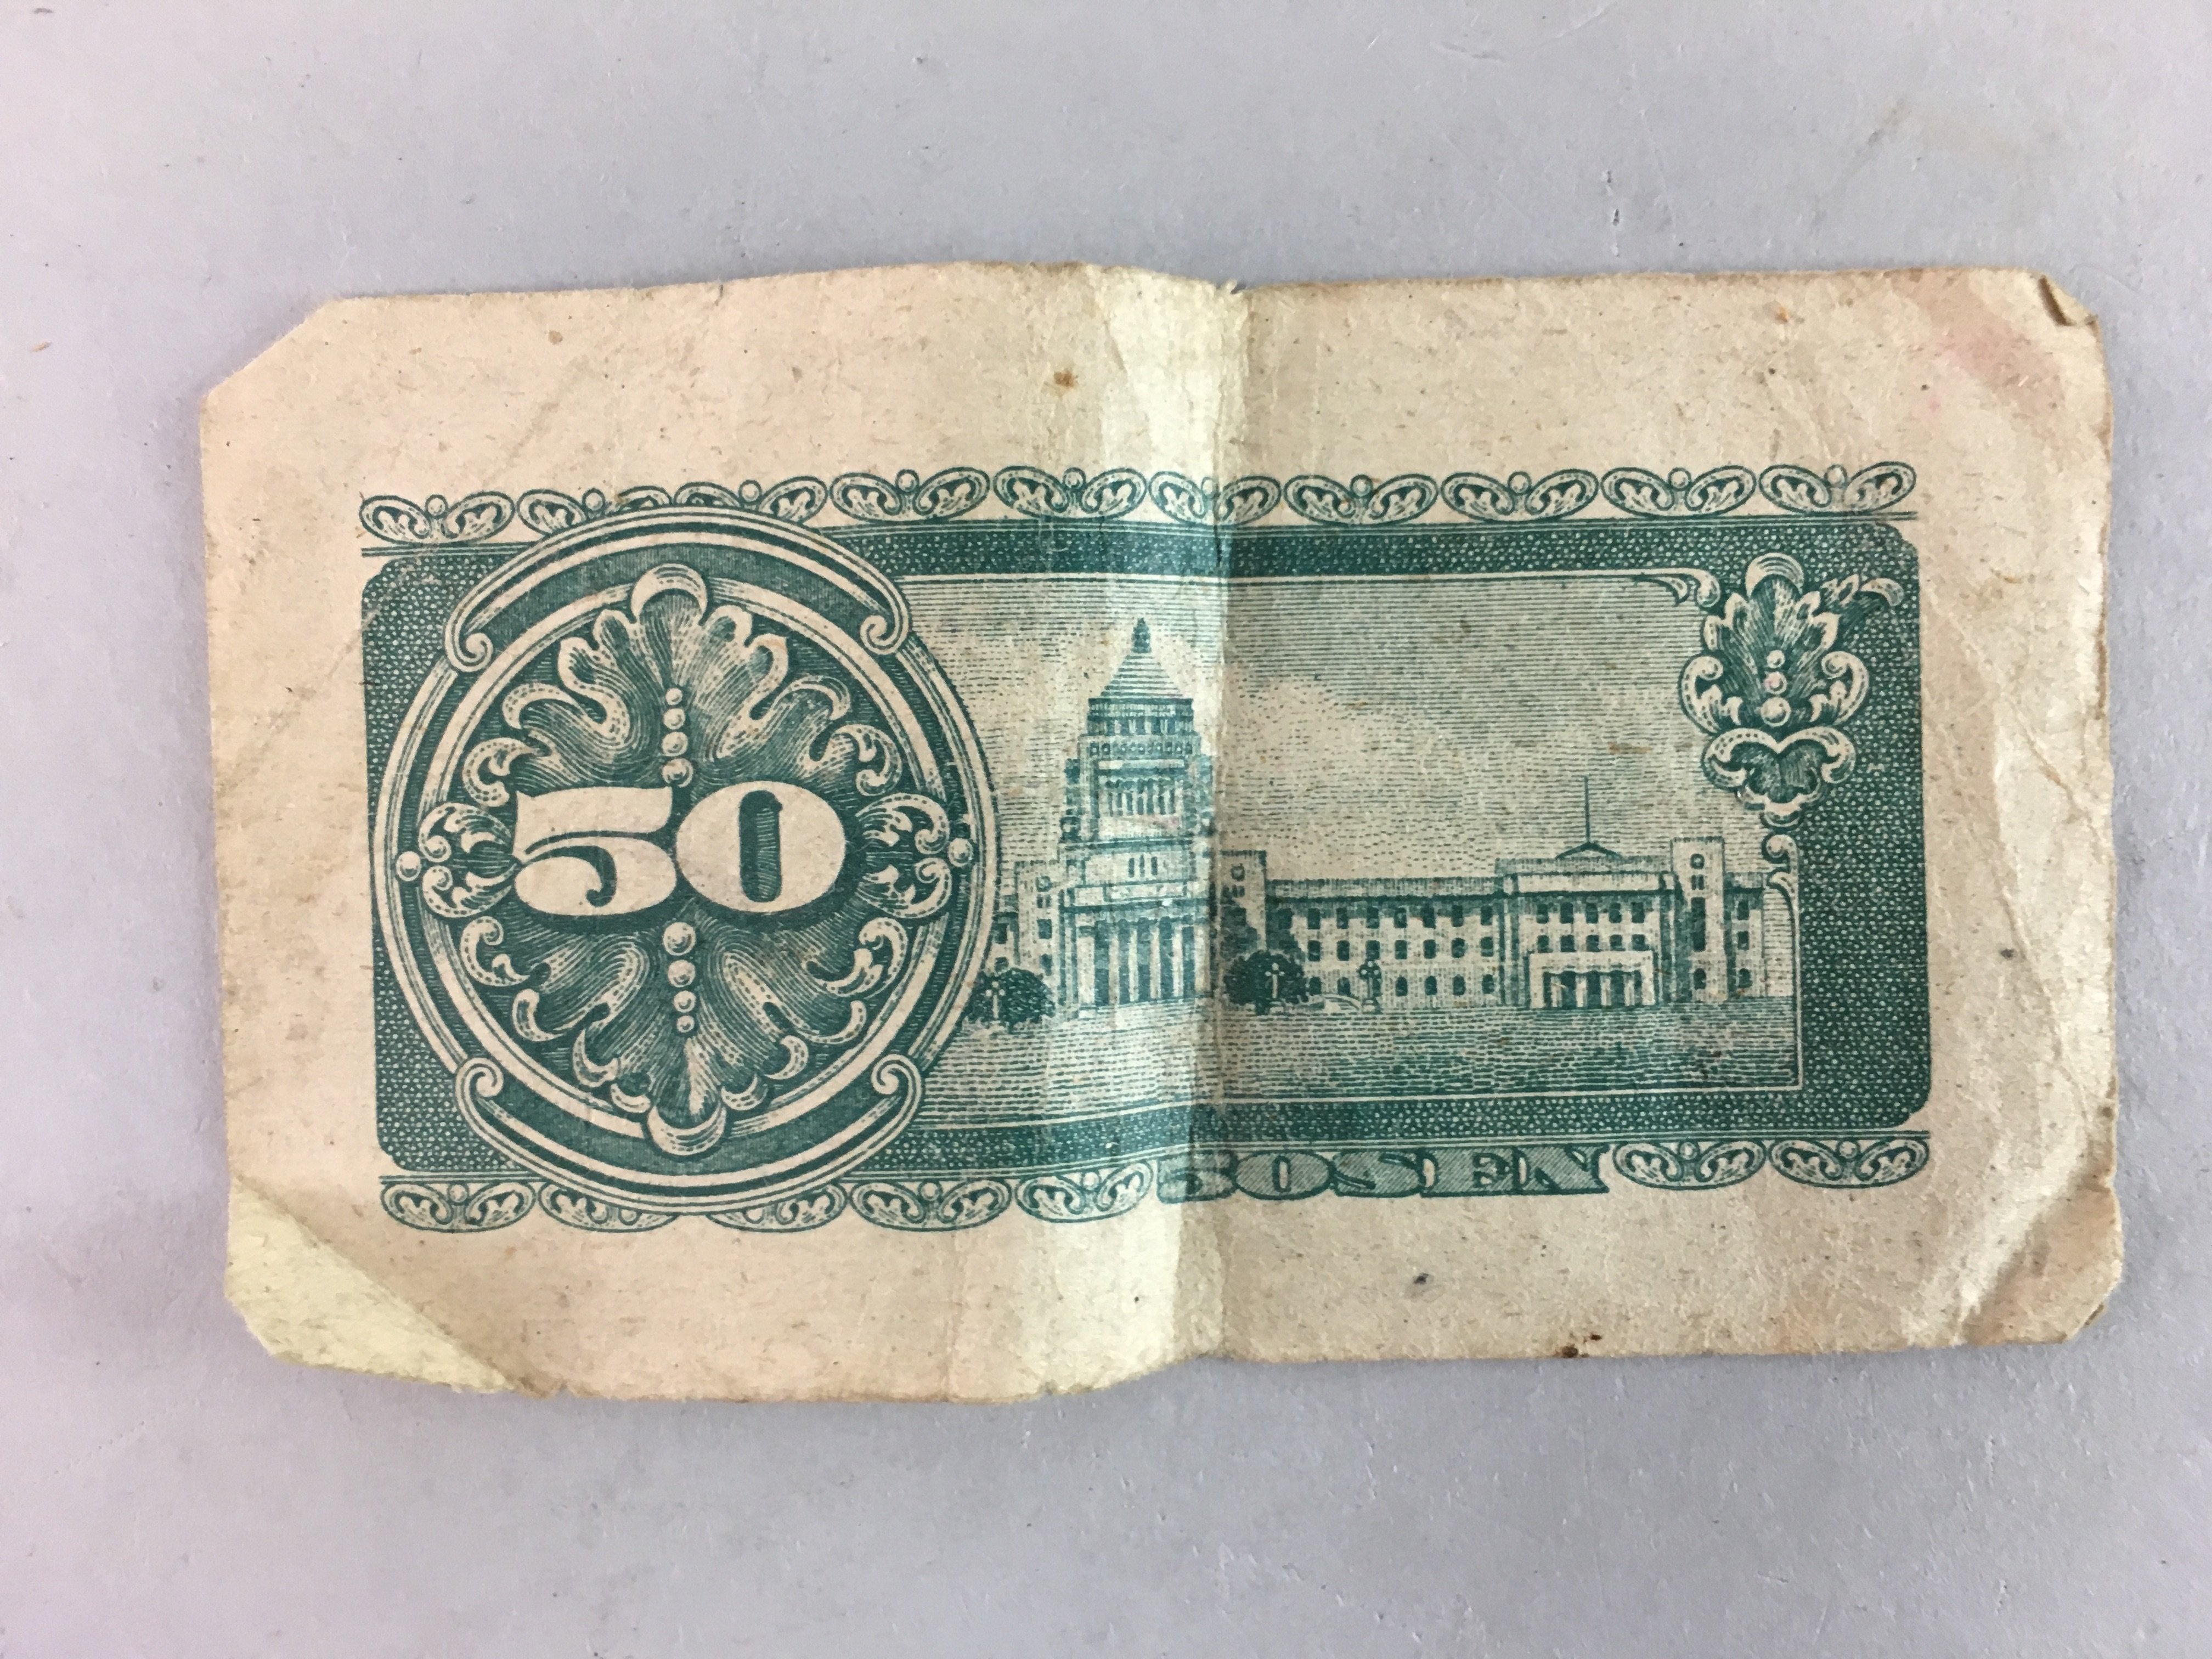 Japanese 50 sen Currency Paper Money 9pc Set Vtg Bank Bill Cash Banknote J766